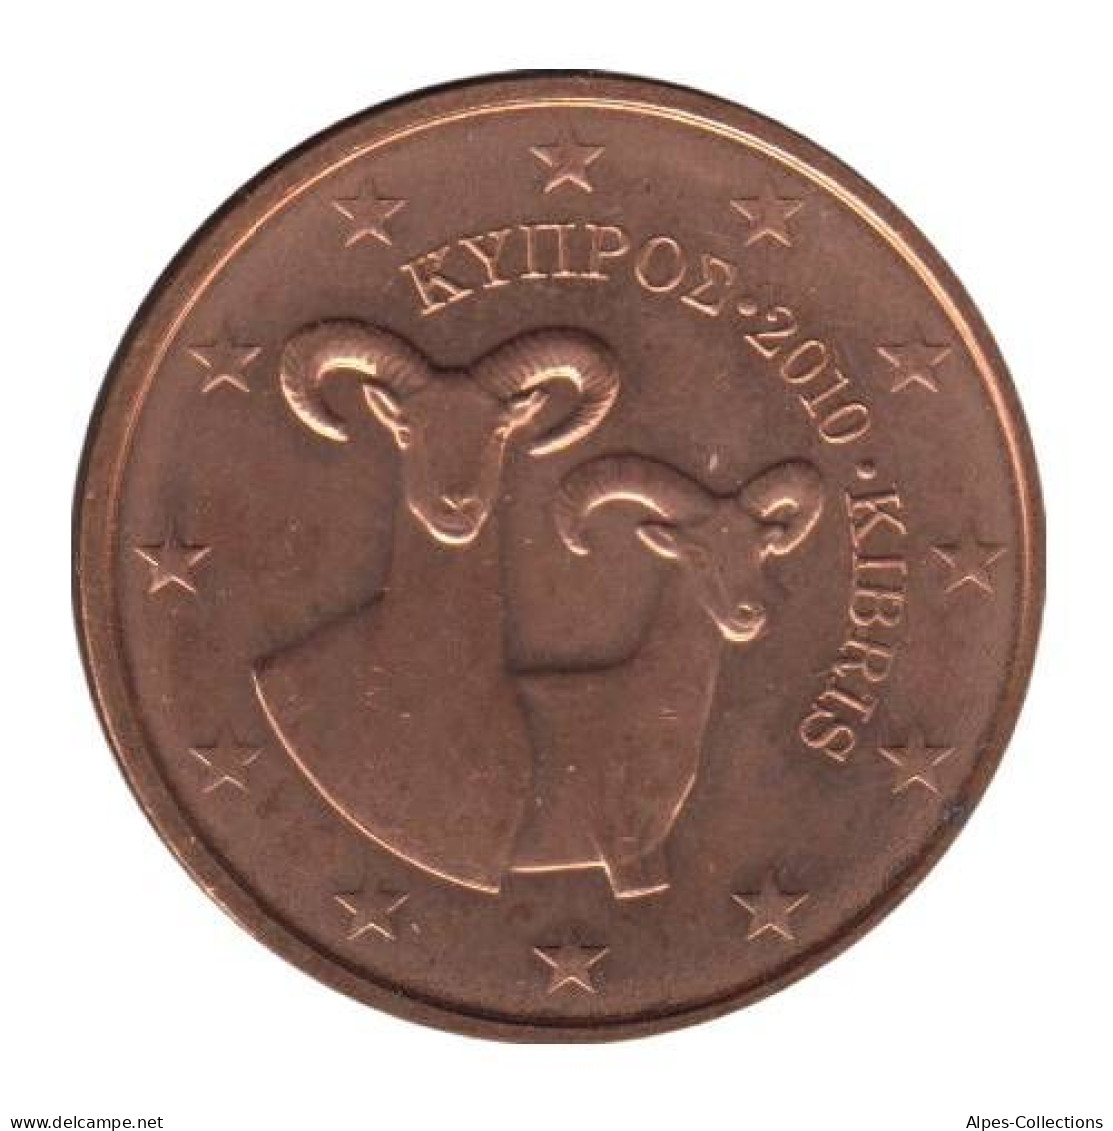 CH00210.1 - CHYPRE - 2 Cents D'euro - 2010 - Chypre